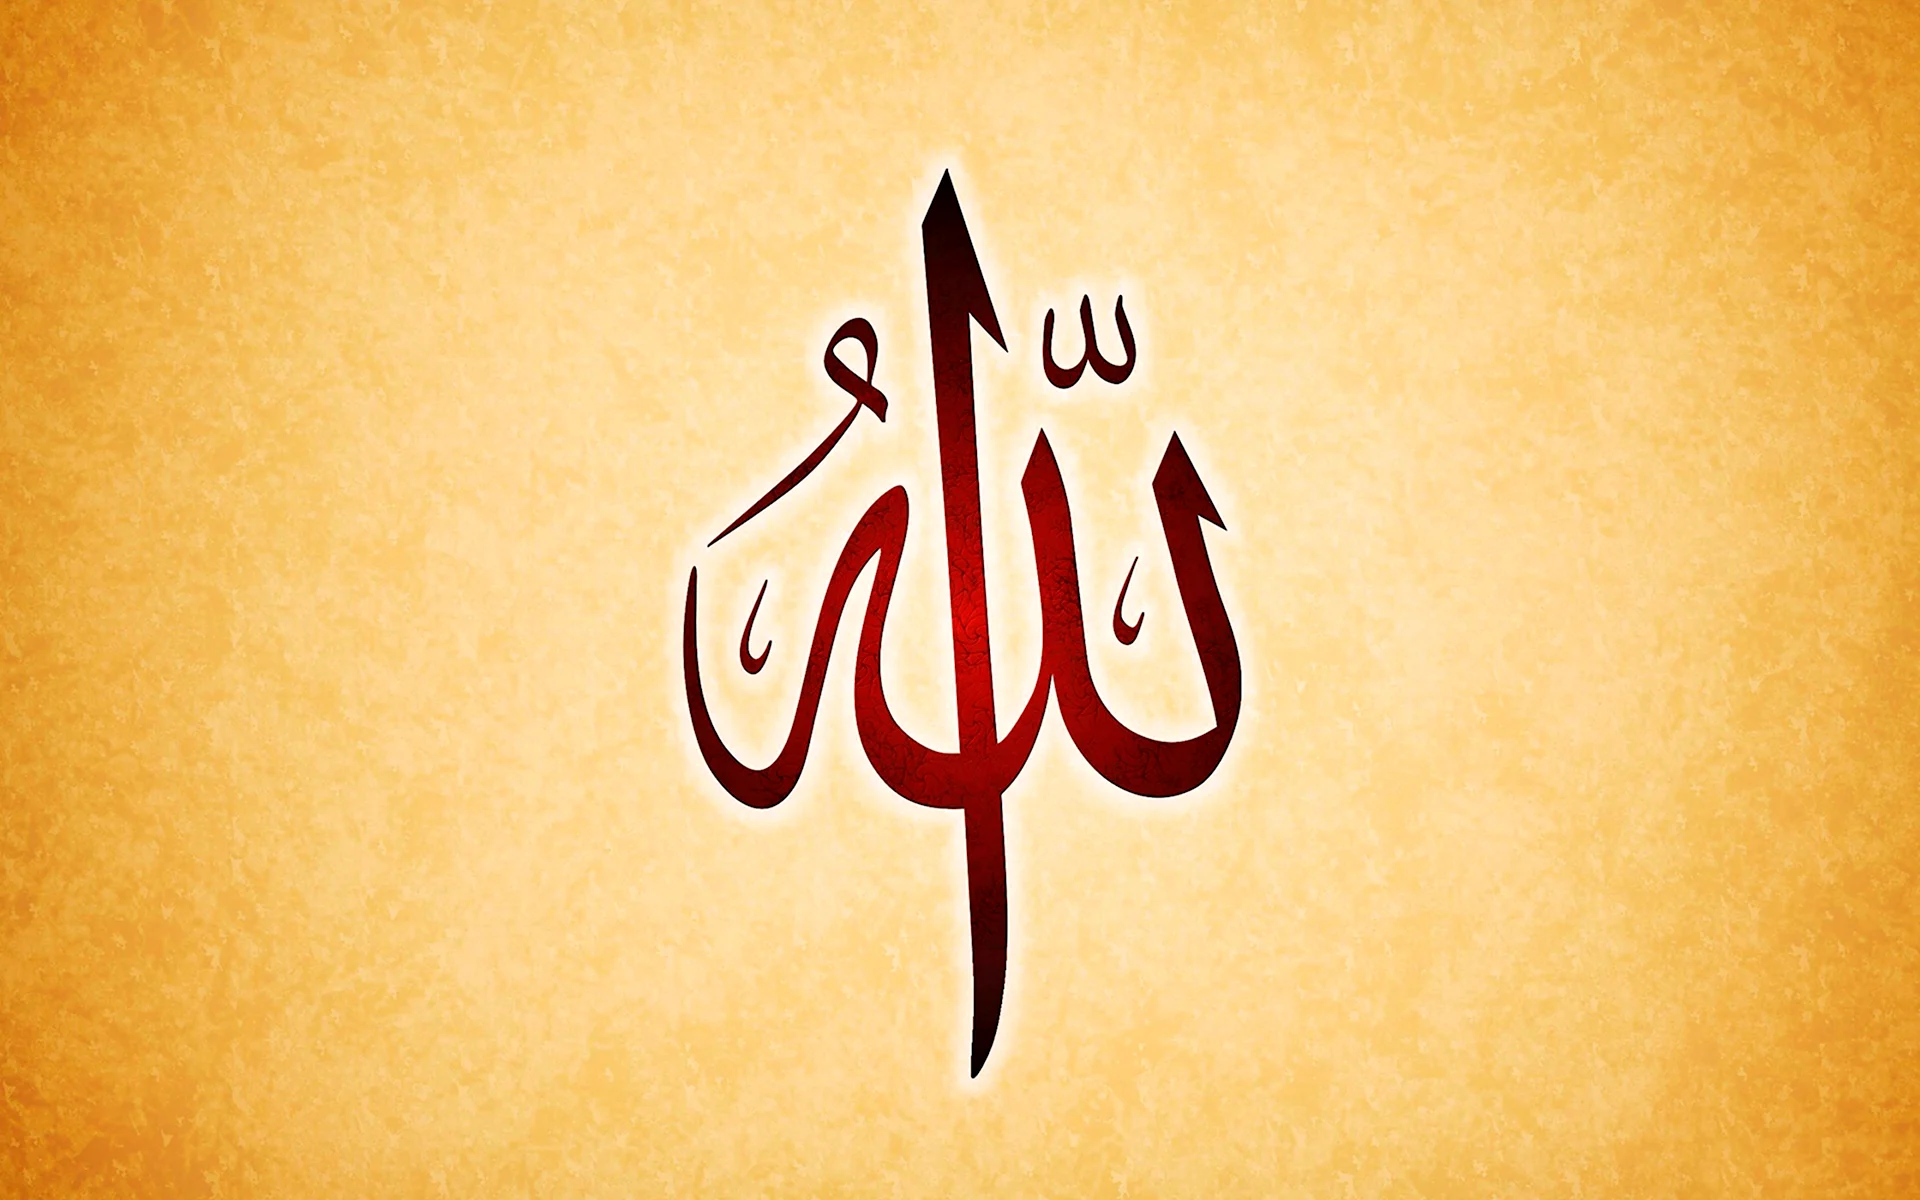 Аллах на арабском